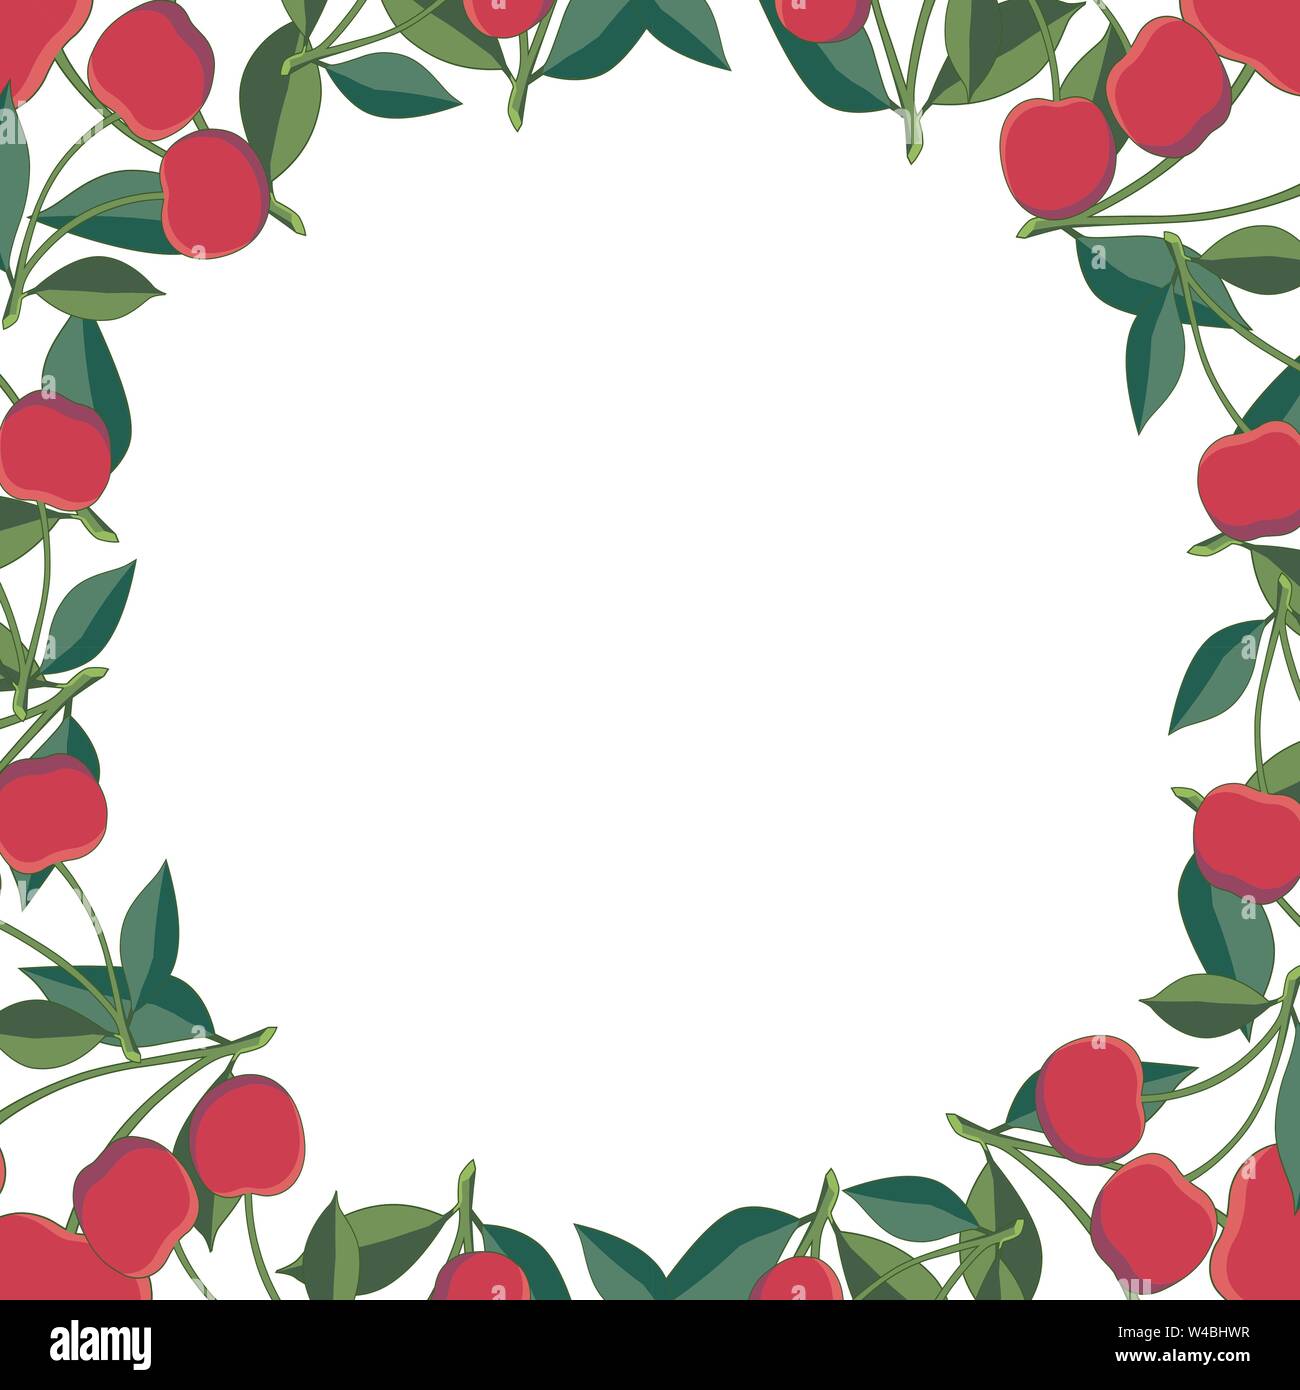 Positive floral Rahmen mit roten Kirschen und grünen Blättern. Floral Wreath. Vorlage für ihr Design, Grußkarte, festliche Ankündigung, Poster, Foto Stock Vektor